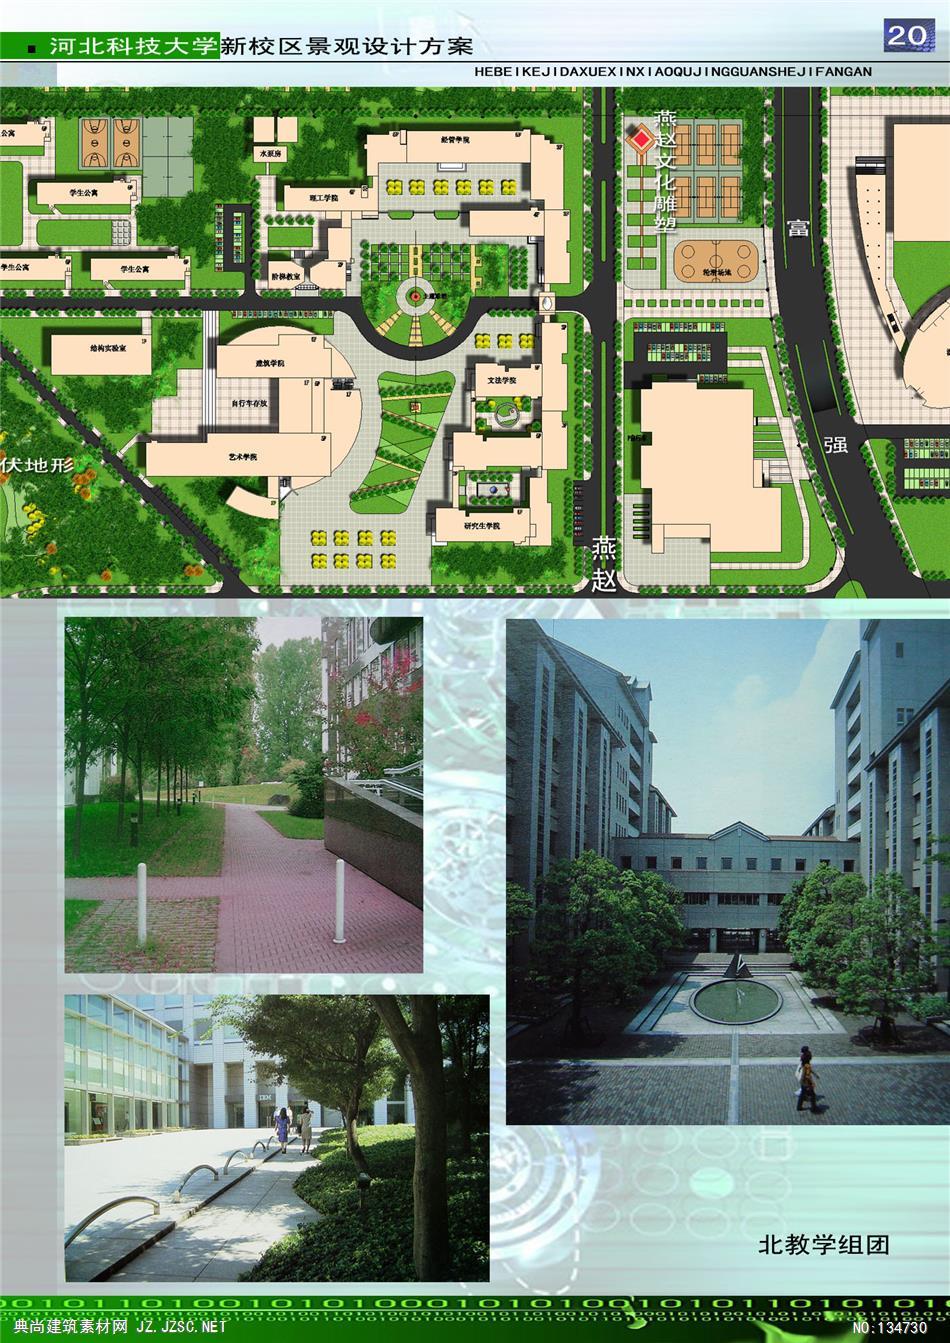 河北科技大学新校区景观设计方案zip-rar 校园景观